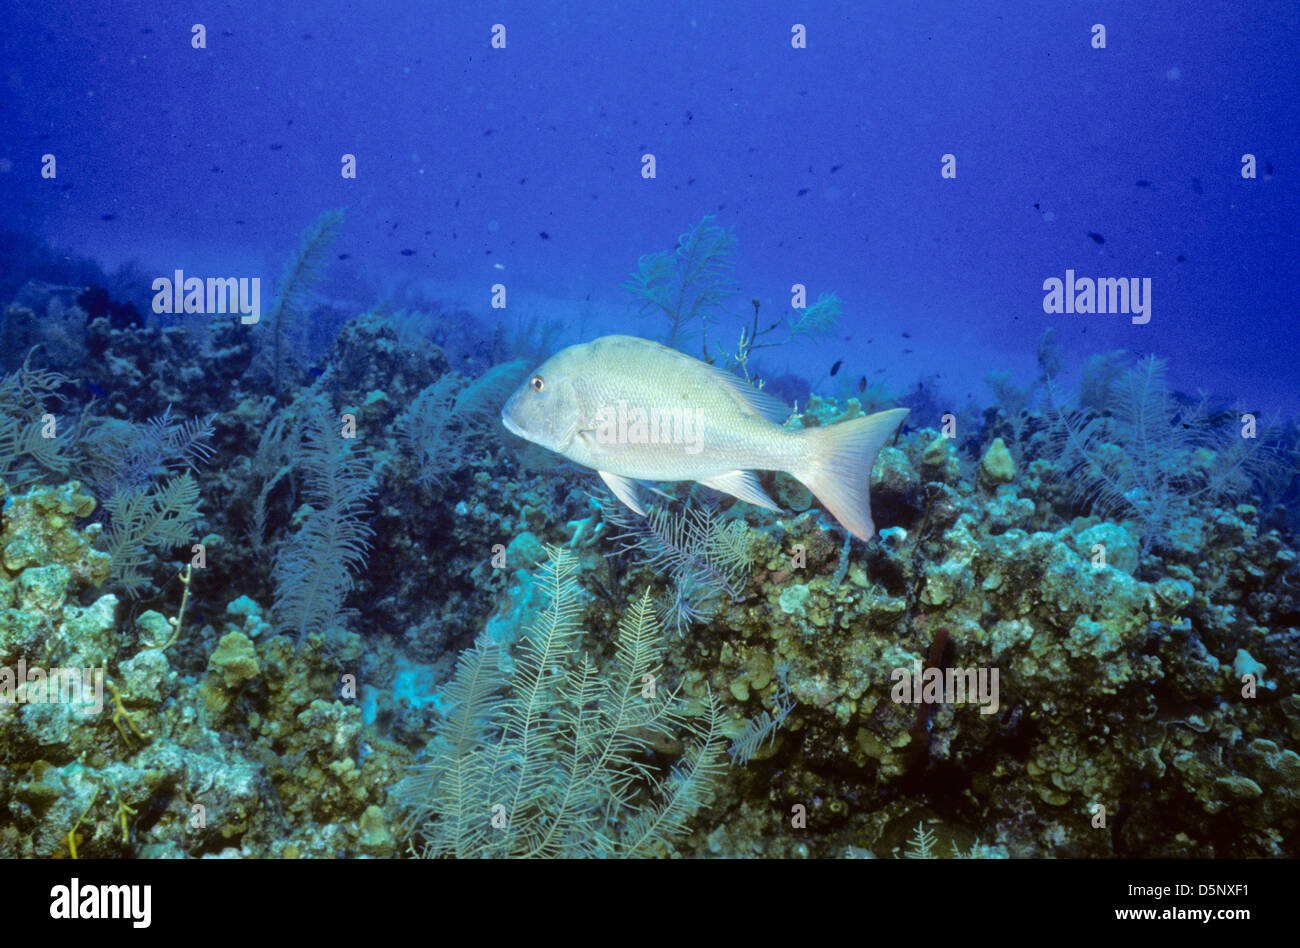 Isole Cayman Sett 1994 diapositive digitale conversioni,Scuba Diving,Divers,Corallo, Fotografia Subacquea,Isole Cayman,dei Caraibi Foto Stock